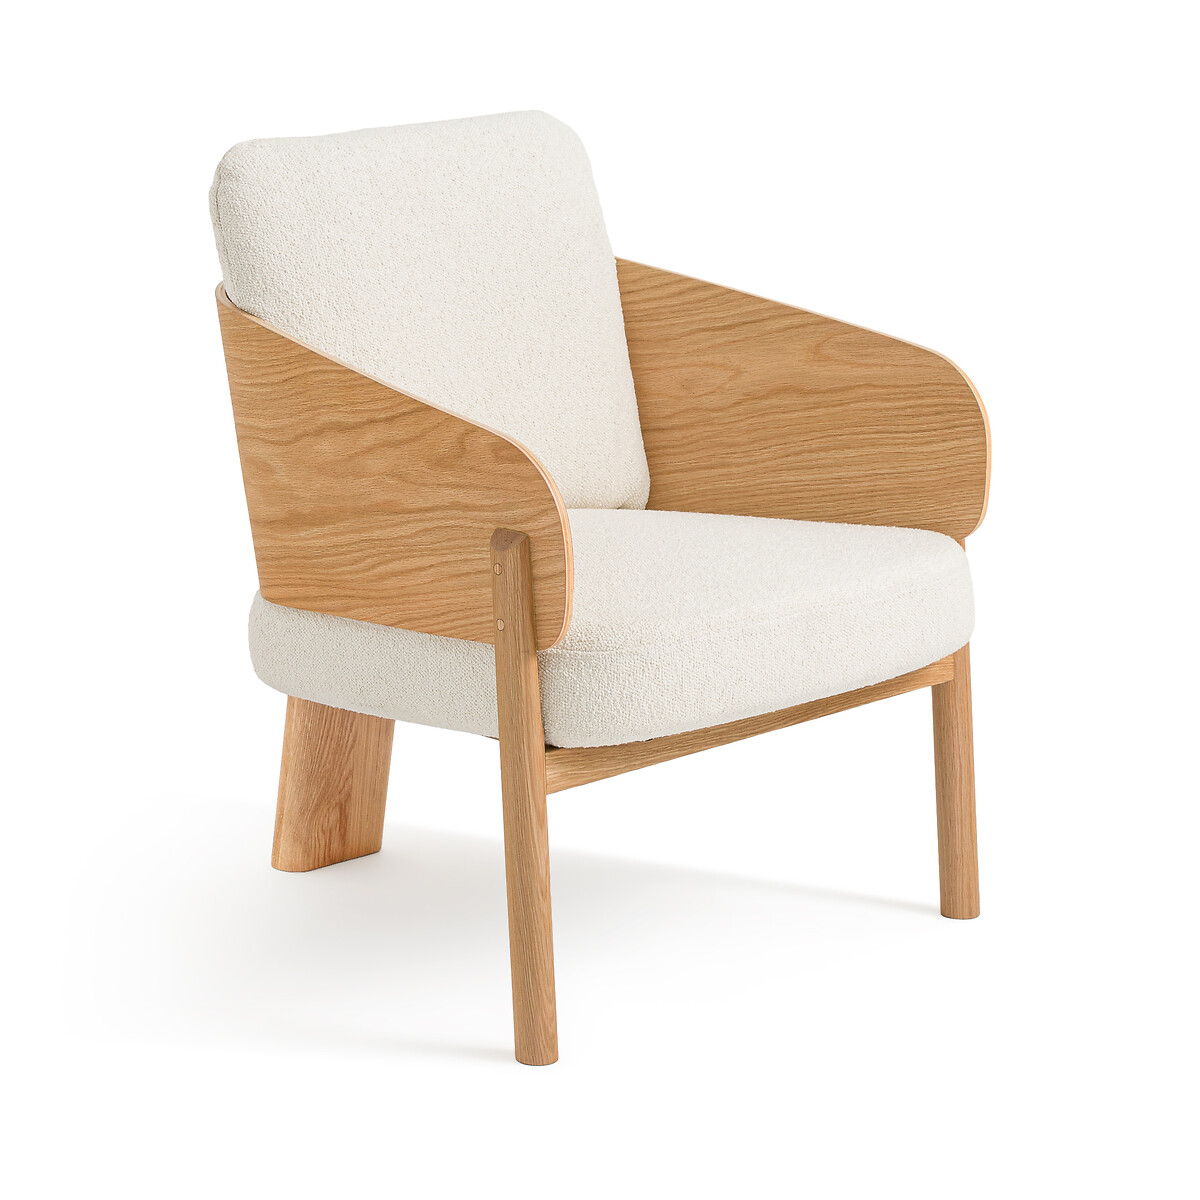 Кресло из дуба ткани букле Marais дизайн Э Галлина единый размер бежевый кресло обеденное с обивкой из буклированной ткани от э галлина marais единый размер каштановый